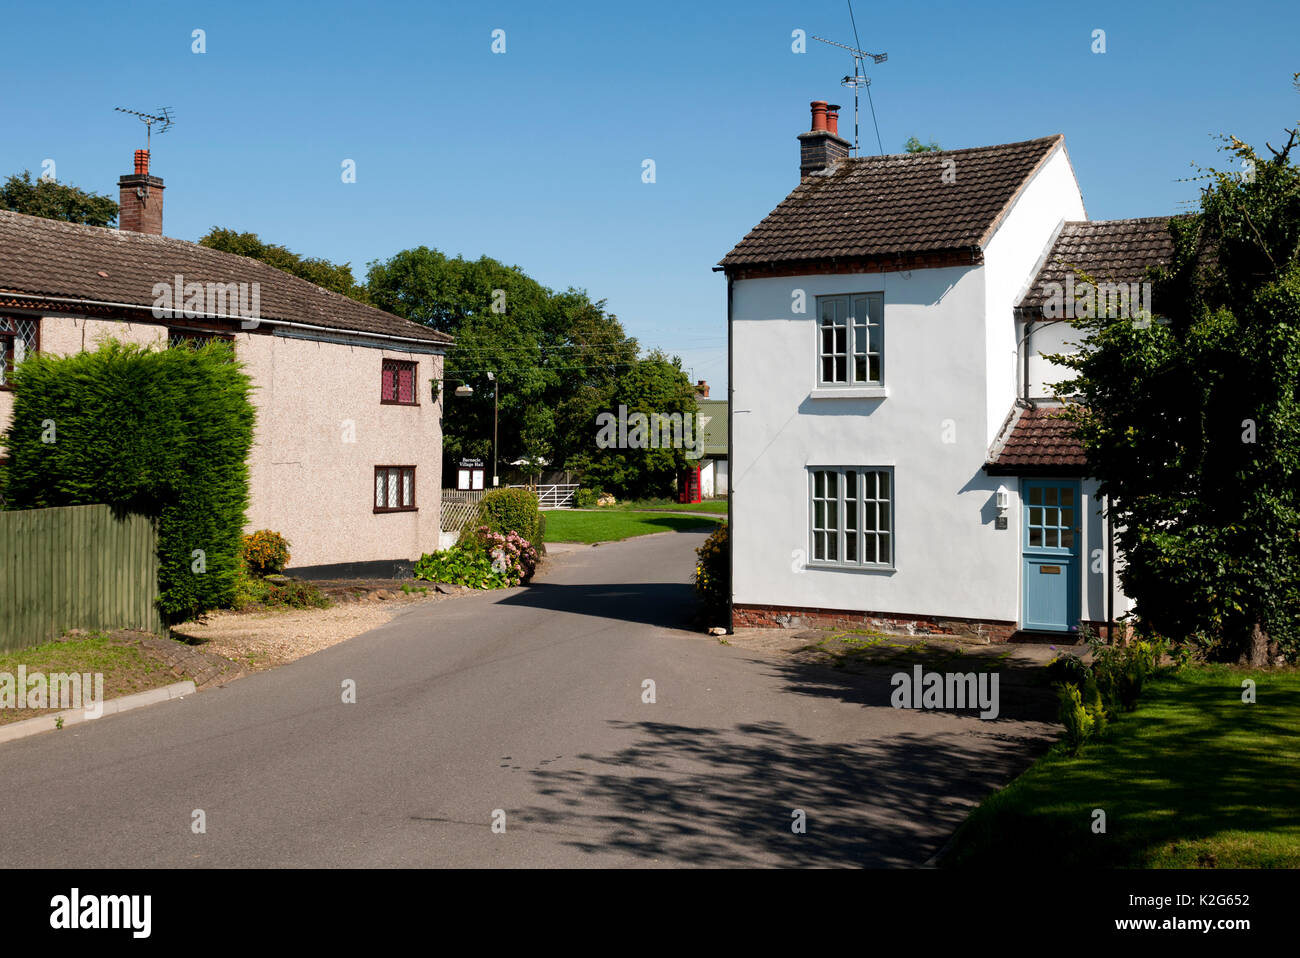 Barnacle village, general view, Warwickshire, England, UK Stock Photo